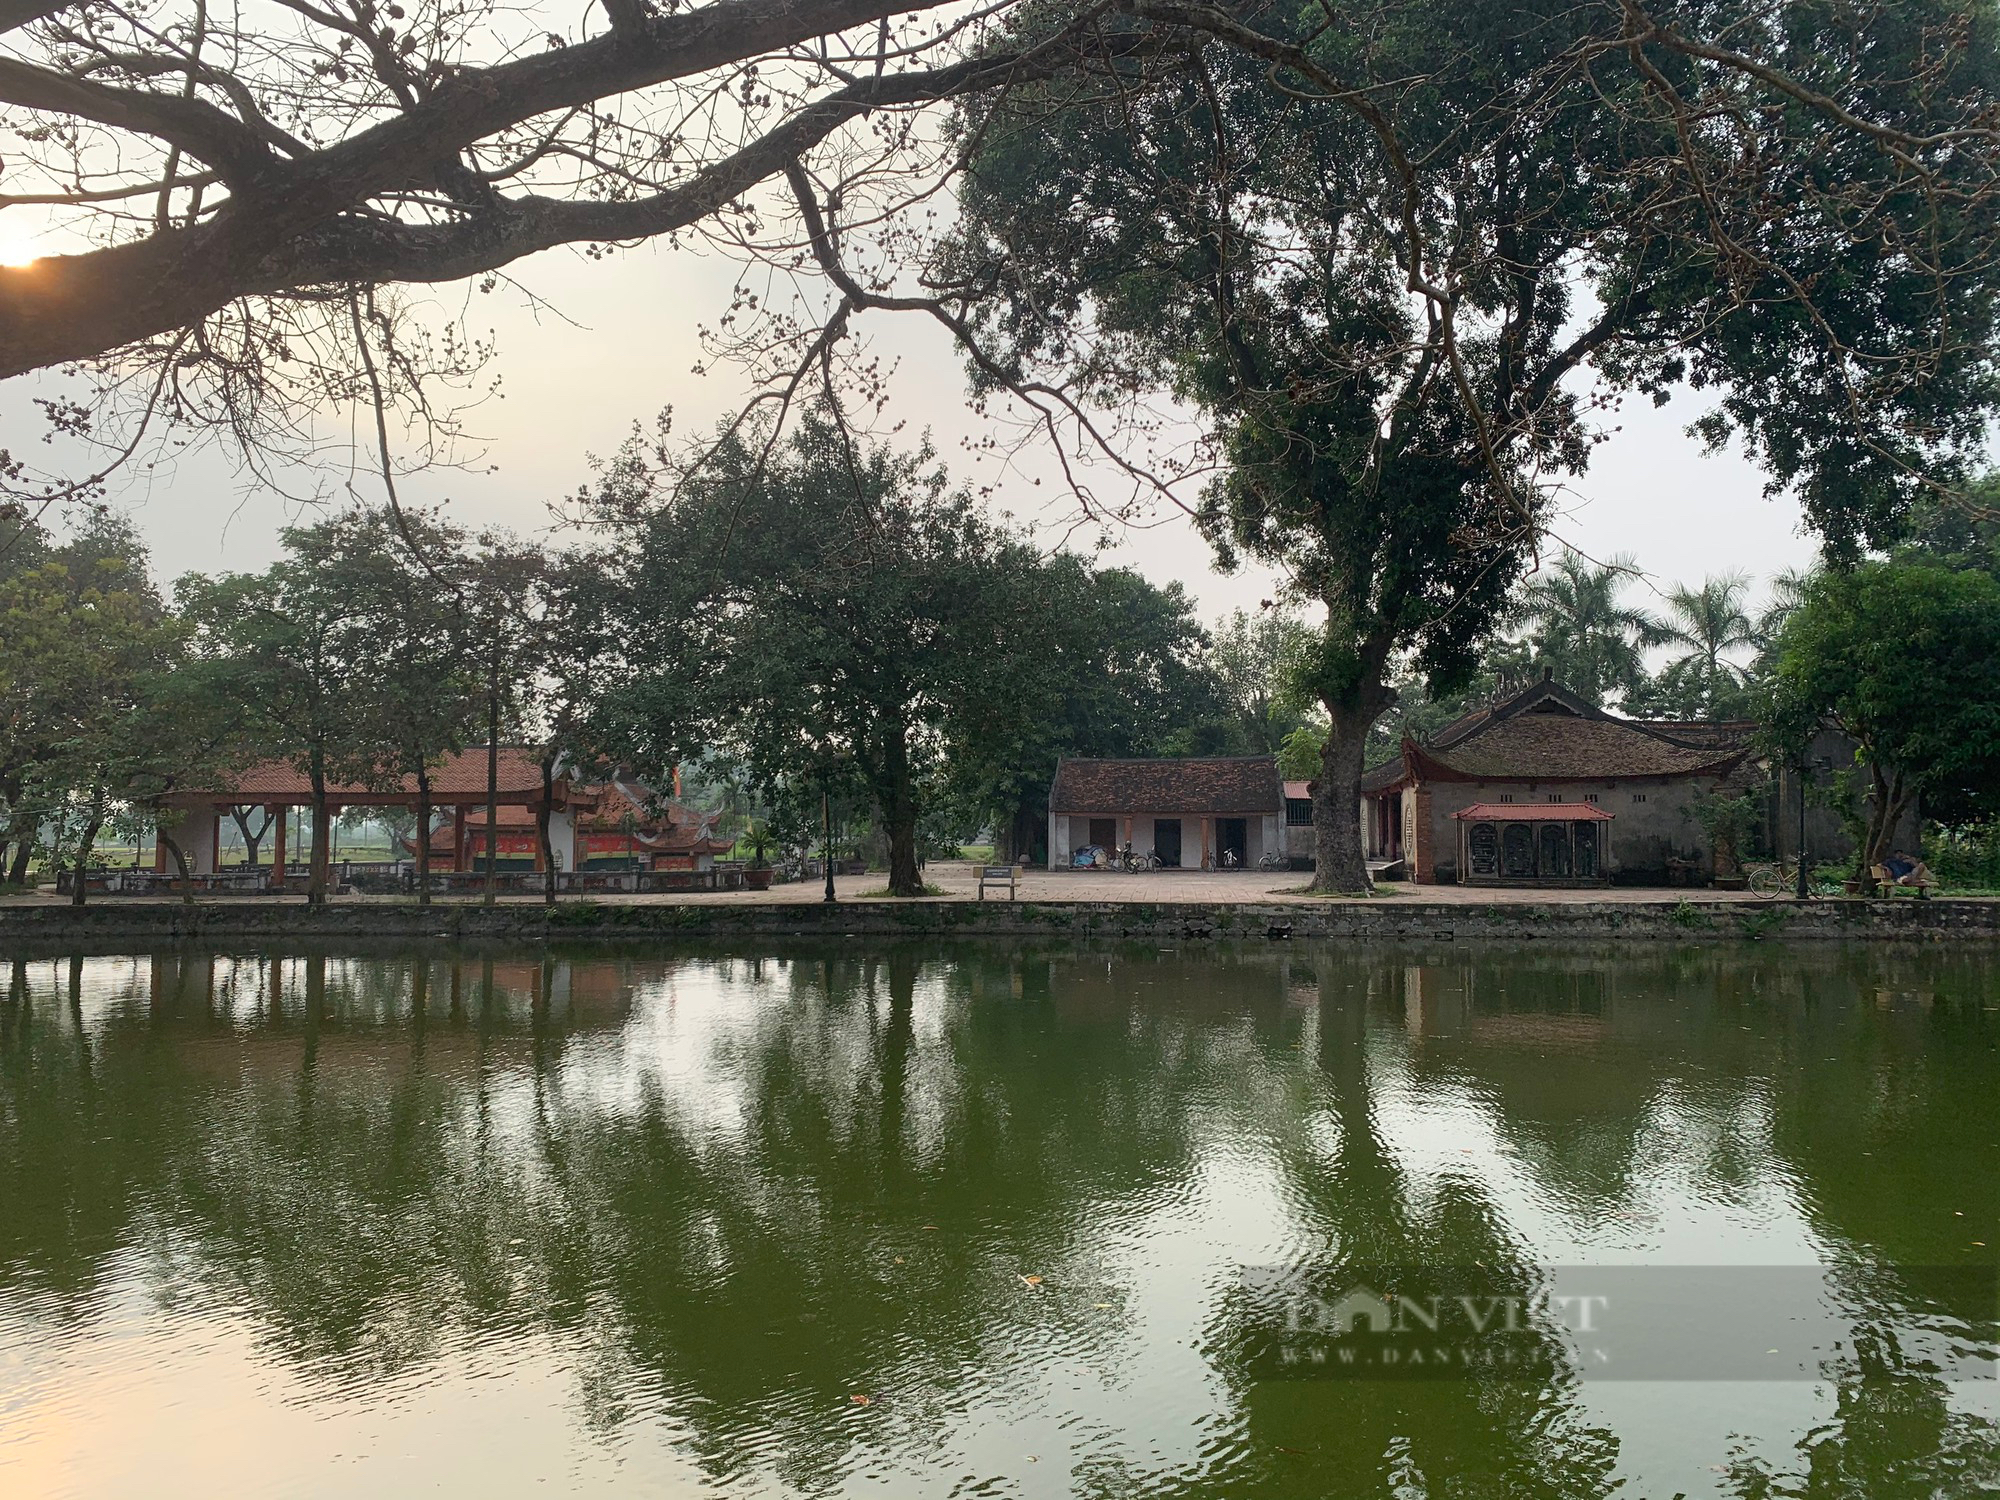 Mê mẩn trước vẻ đẹp yên bình của ngôi làng sản sinh ra trò múa rối nước nổi tiếng ở Hà Nội - Ảnh 5.